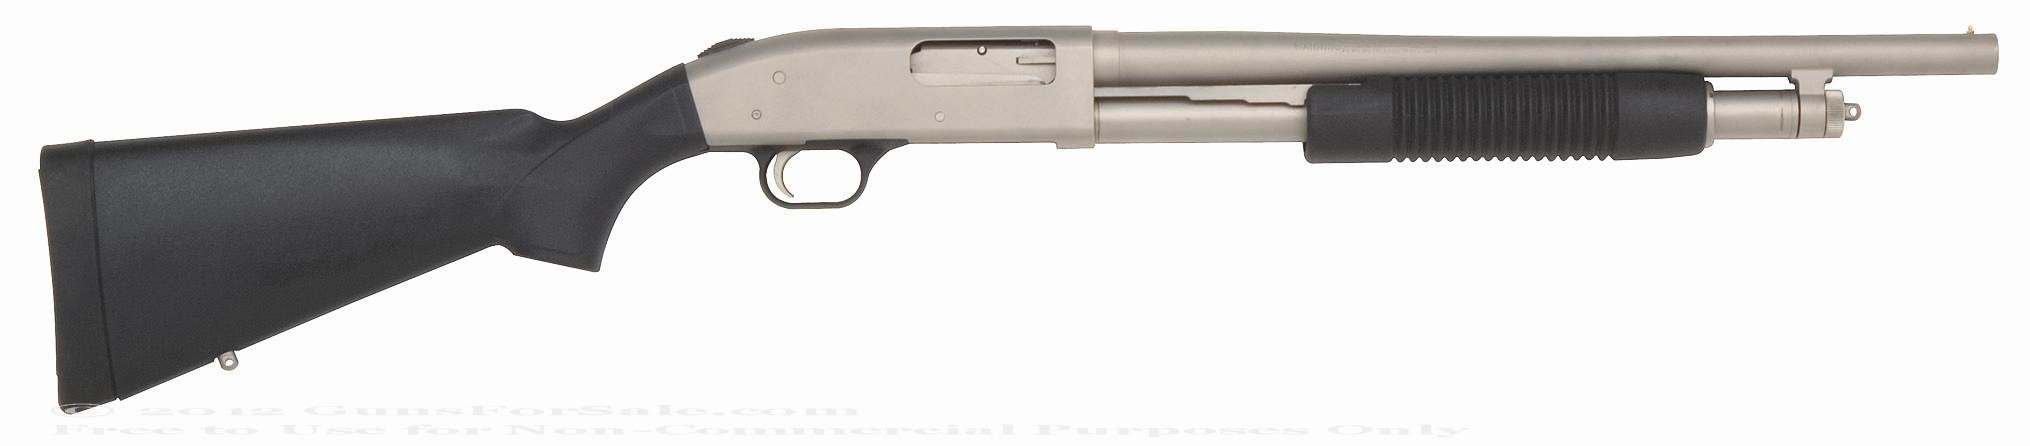 Mossberg 500 Mariner Shotgun For Sale